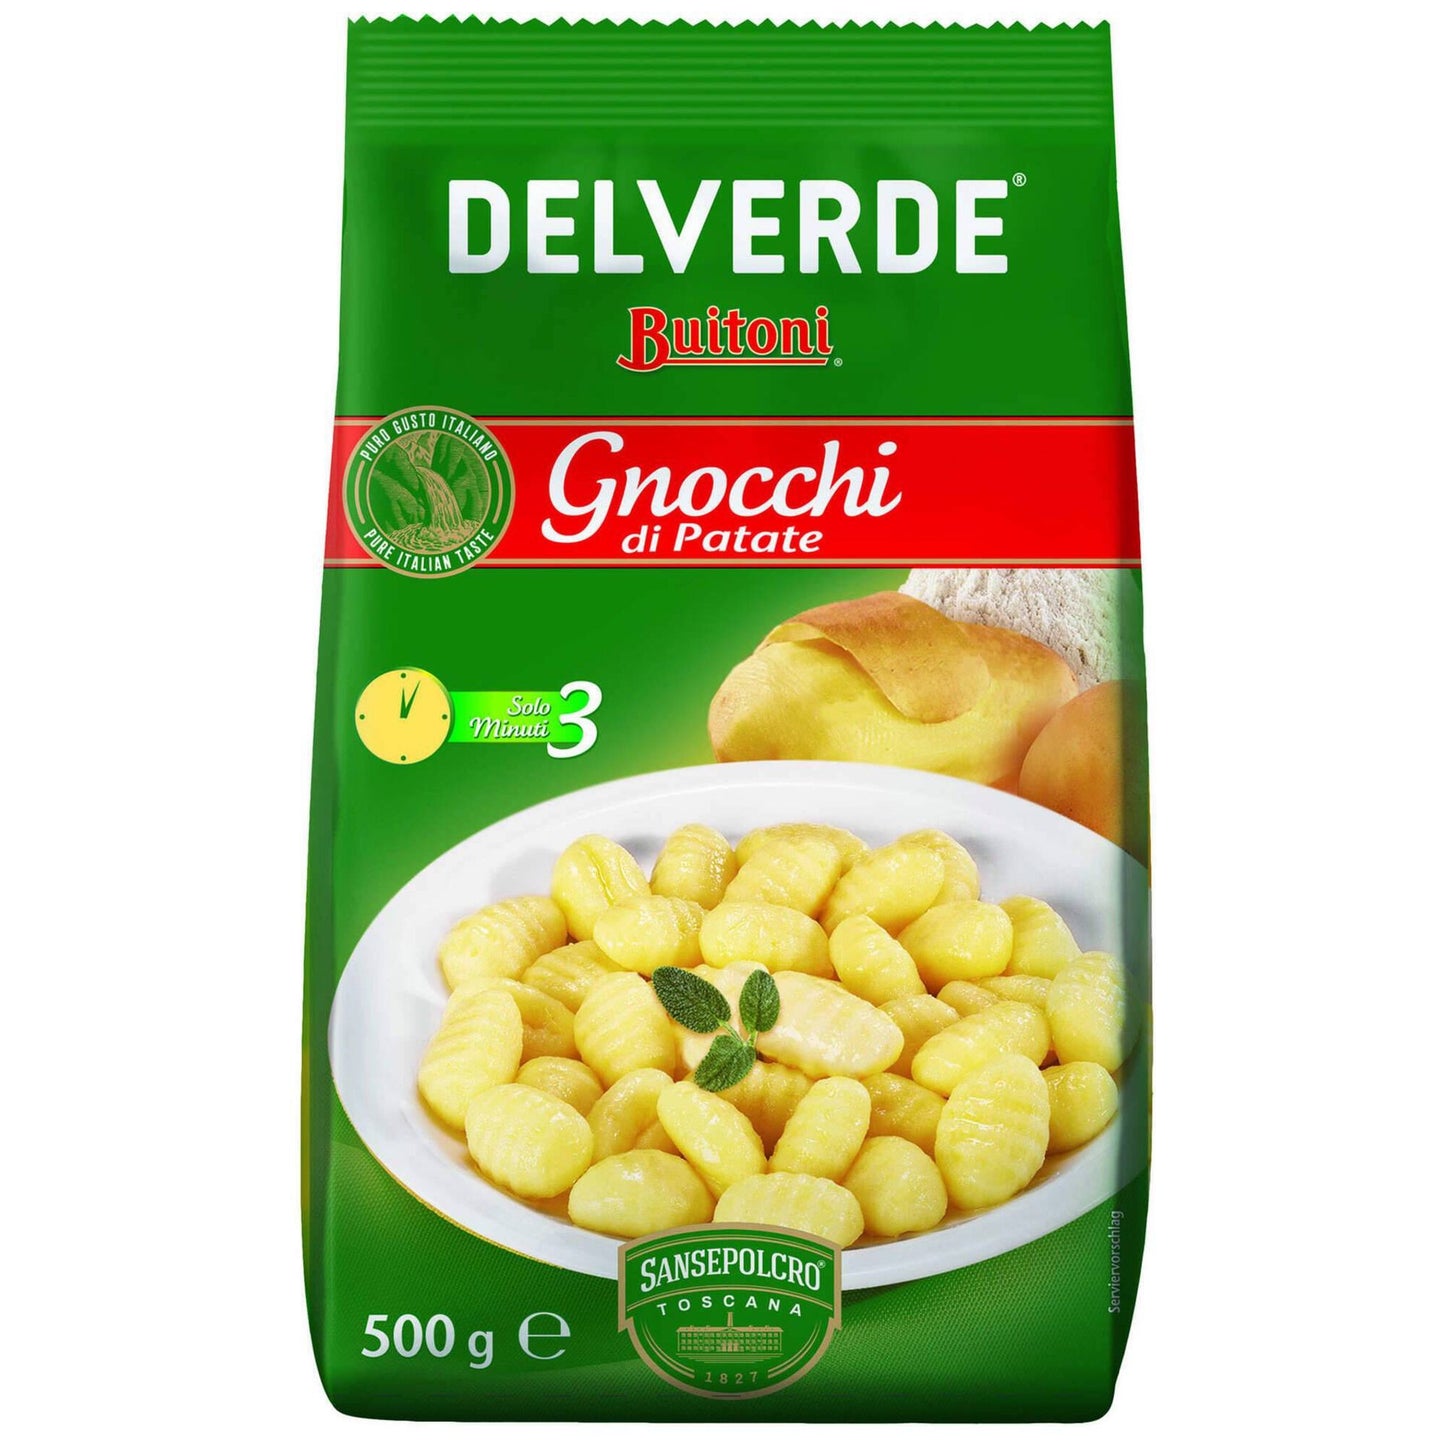 Gnocchi Delverde 500 grams